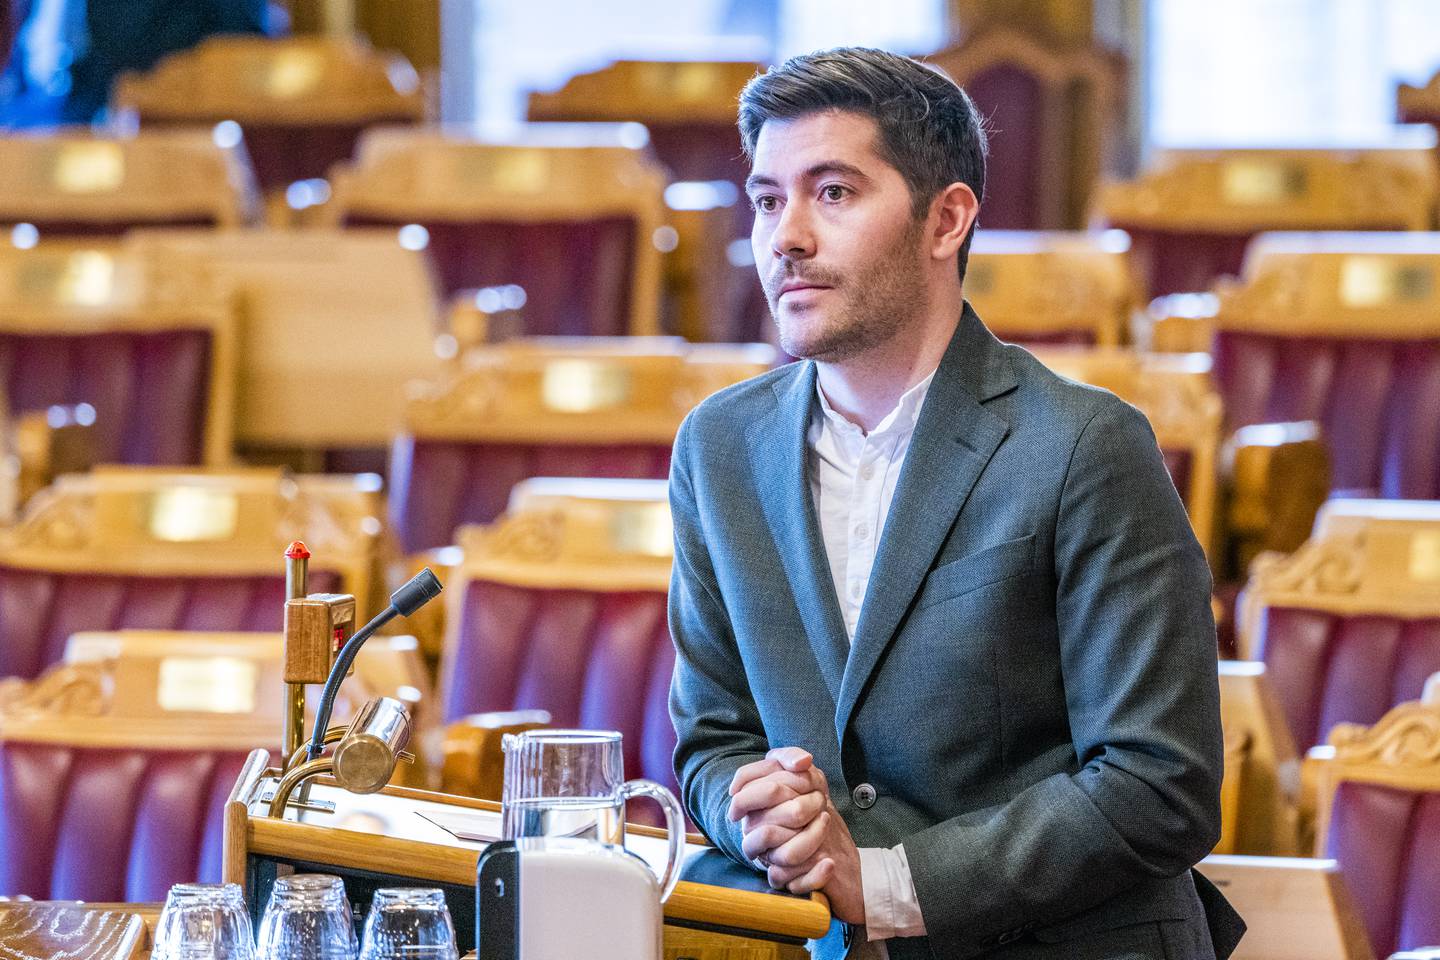 Venstres Grunde Almeland ber barne- og familieministeren komme med forslag til hvordan kapasiteten på krematorier kan økes.
Foto: Håkon Mosvold Larsen / NTB